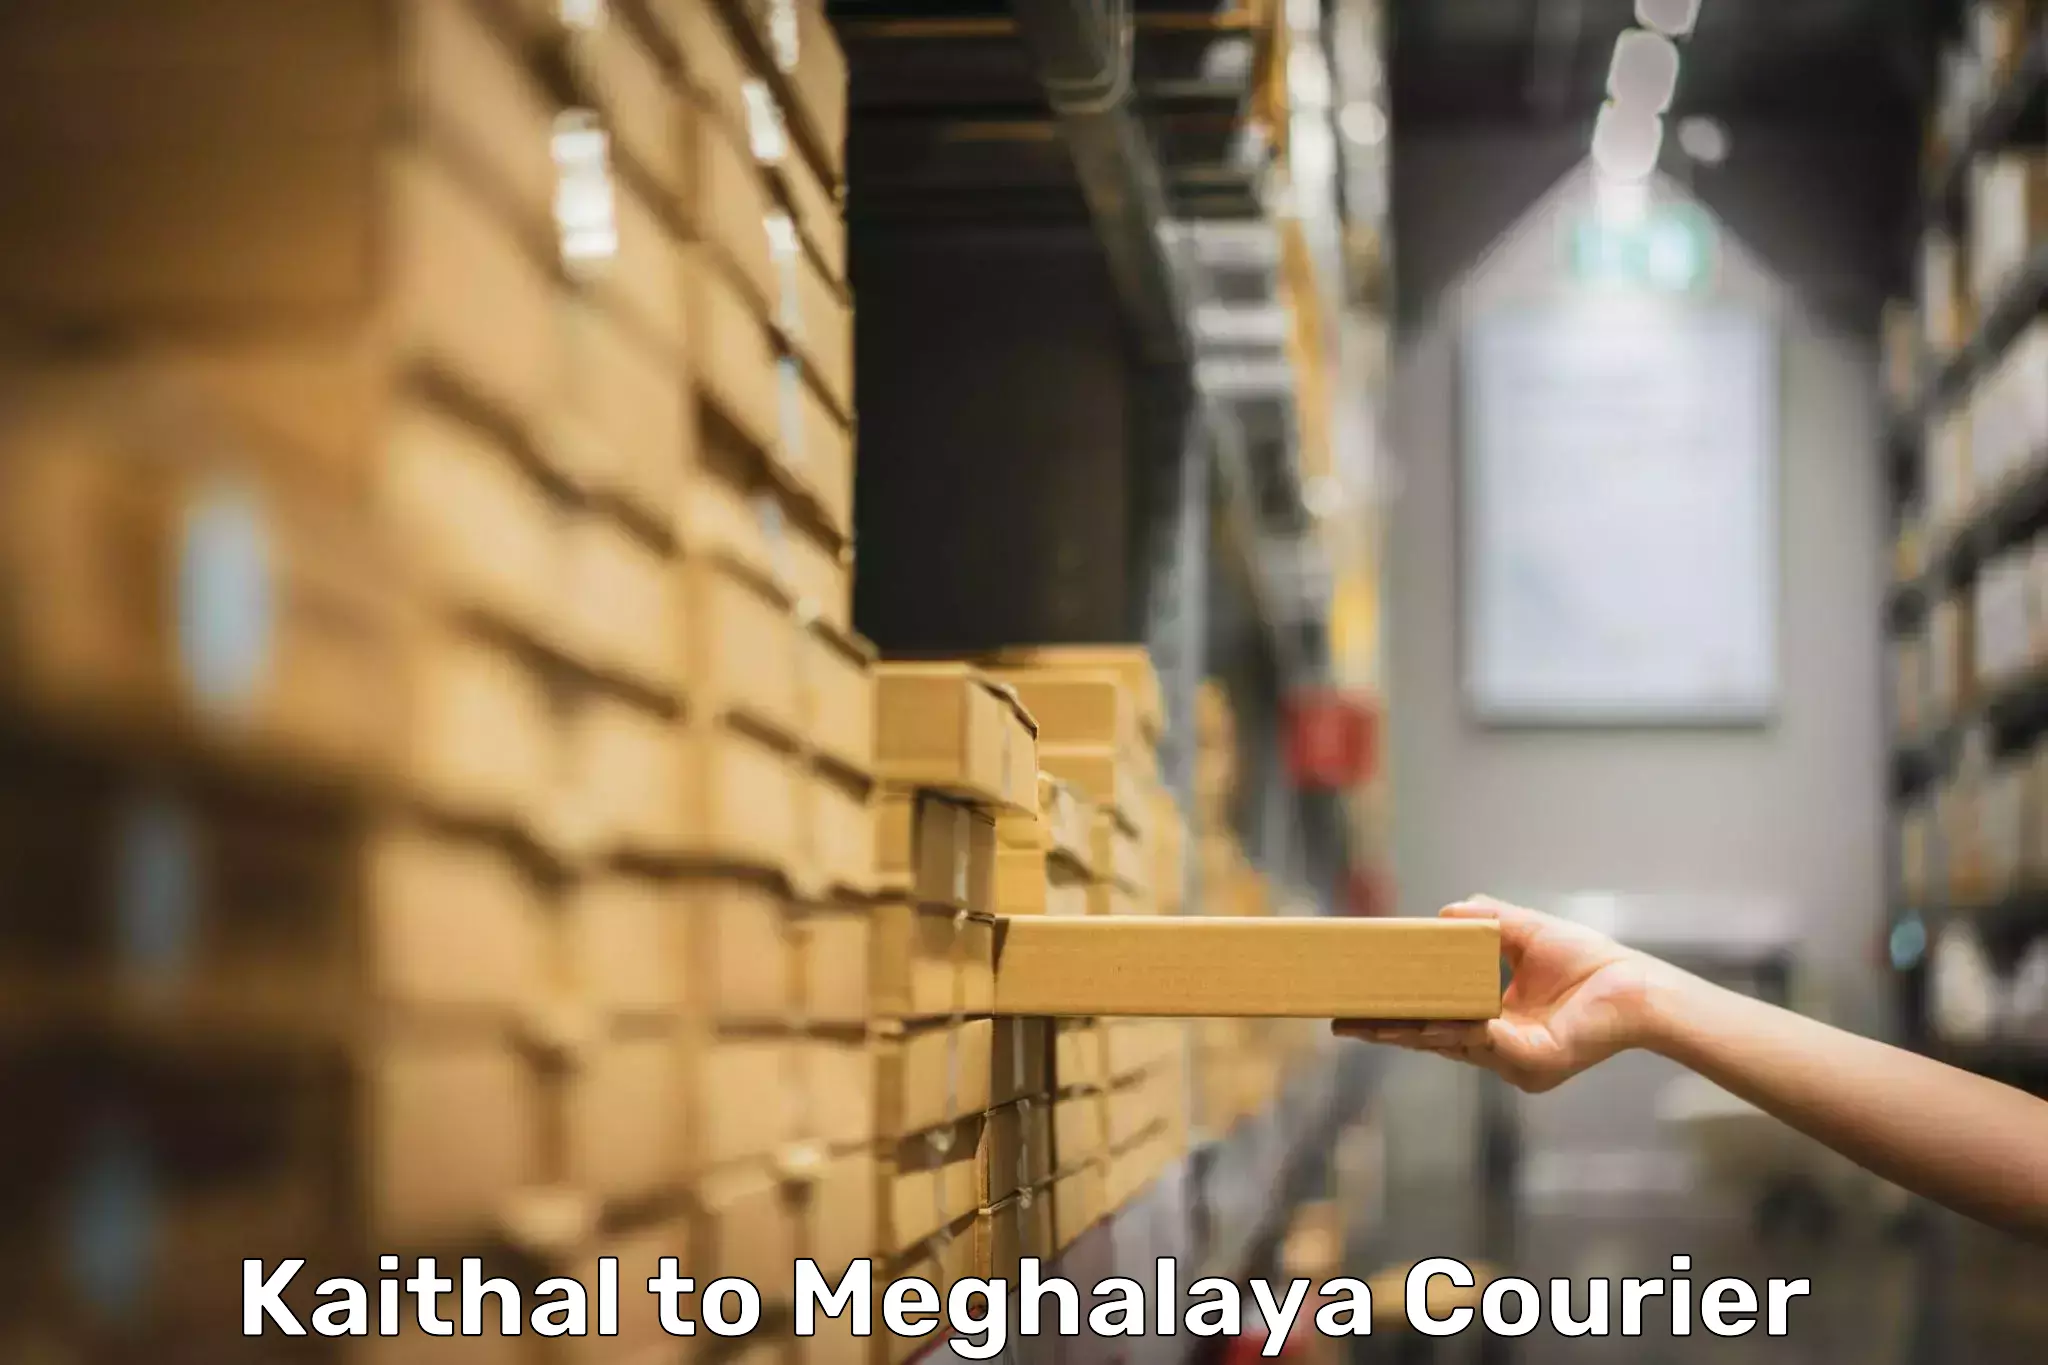 Baggage shipping service Kaithal to Meghalaya